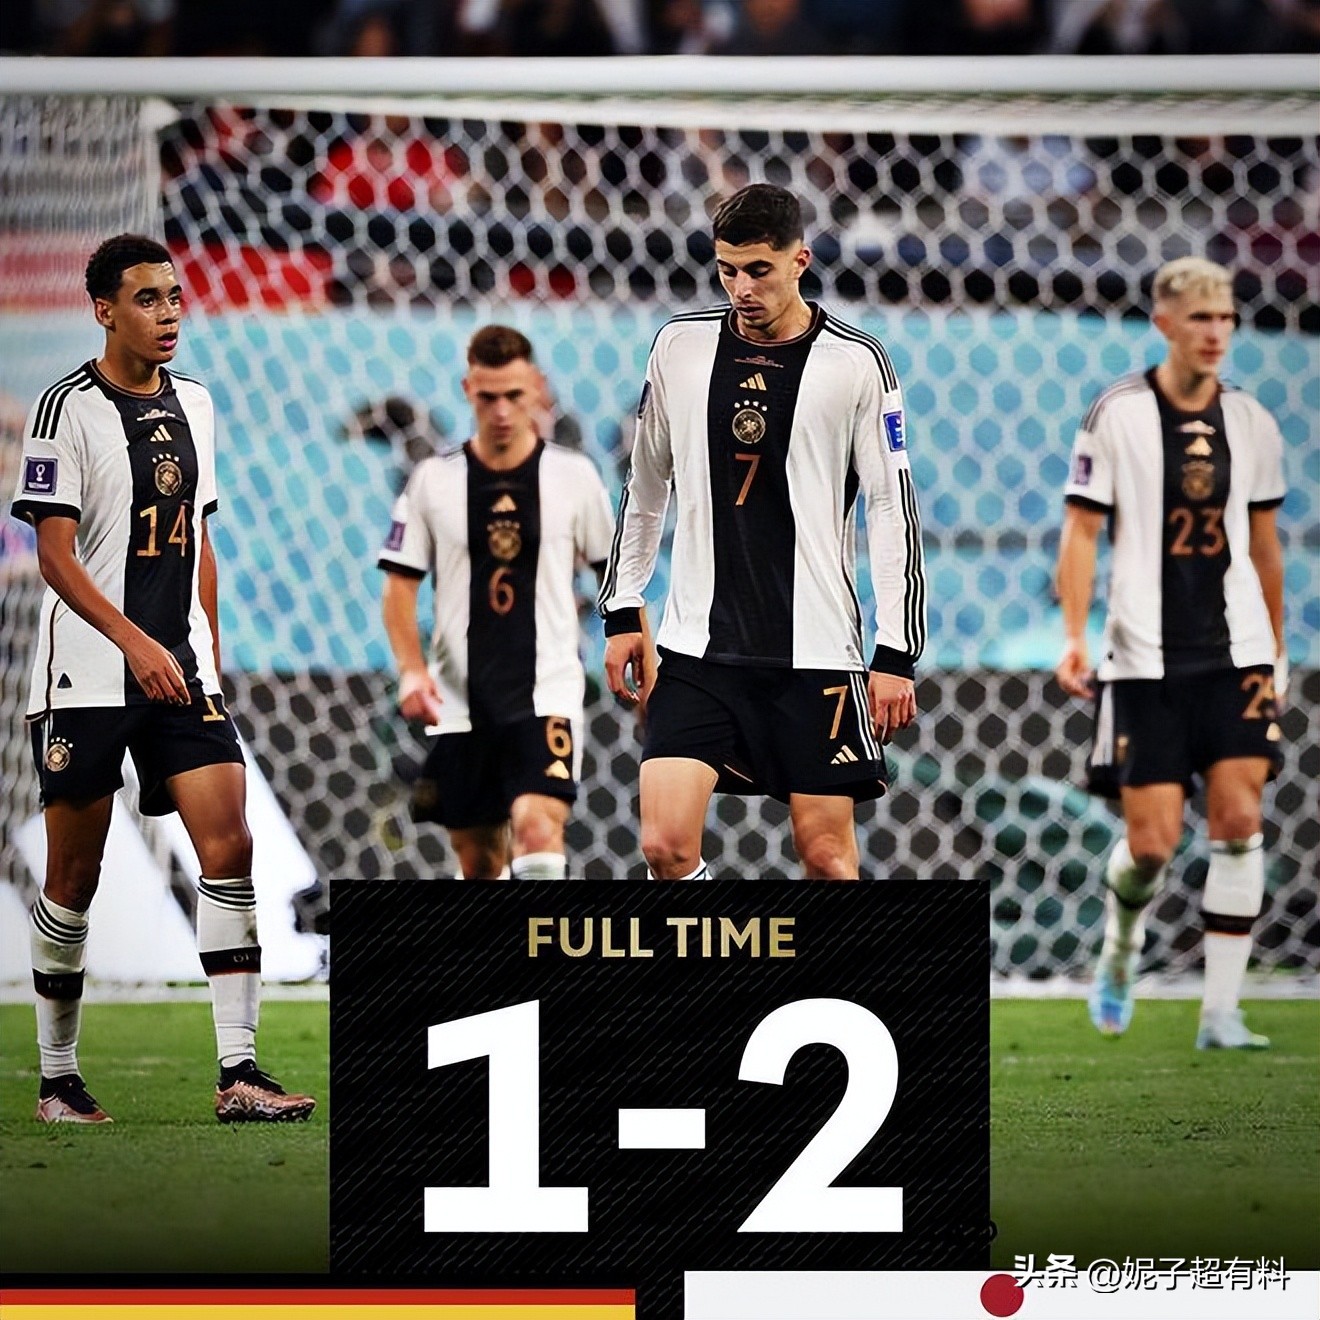 输不起！德国队1-2惨败输日本遭群嘲，德国球迷全场爆怒失态